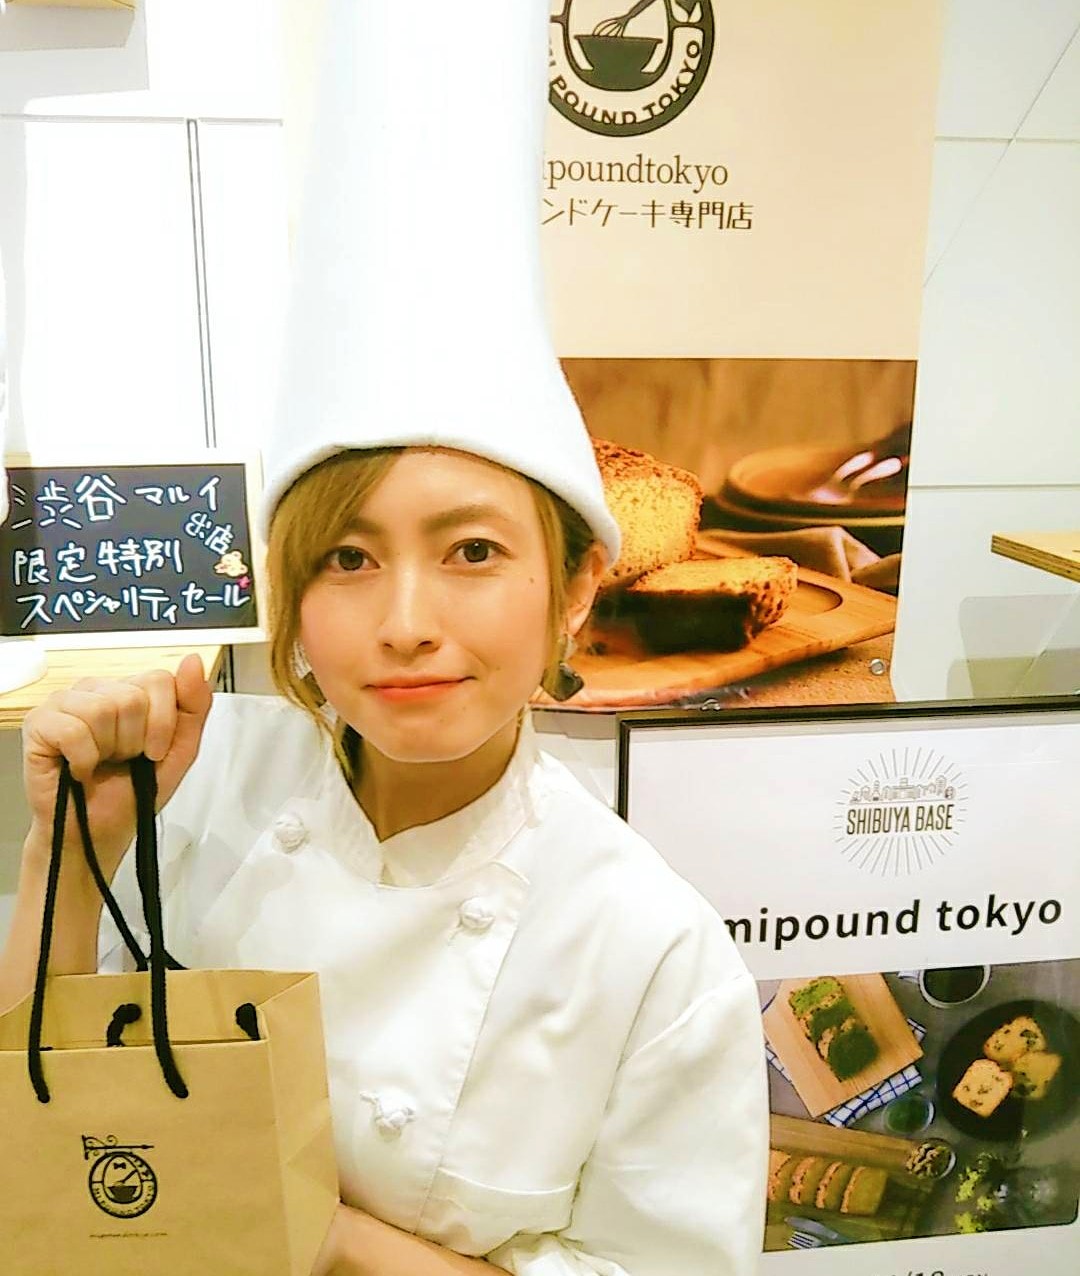 日本一長いコック帽のケーキ屋さん なぜ長い コック帽の理由 パウンドケーキ専門店 Mipoundtokyo